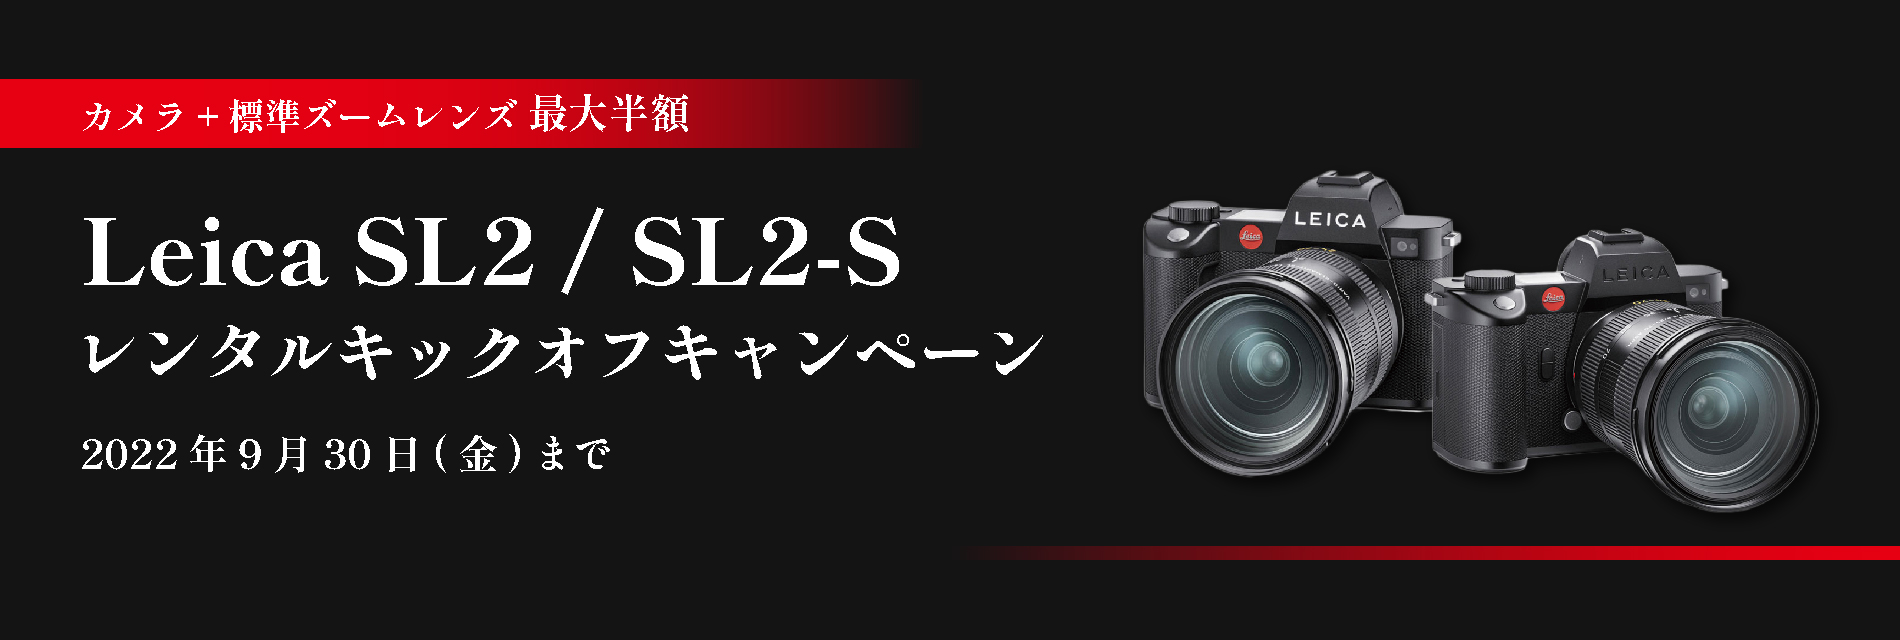 Leica SL2 / SL2-S campaign